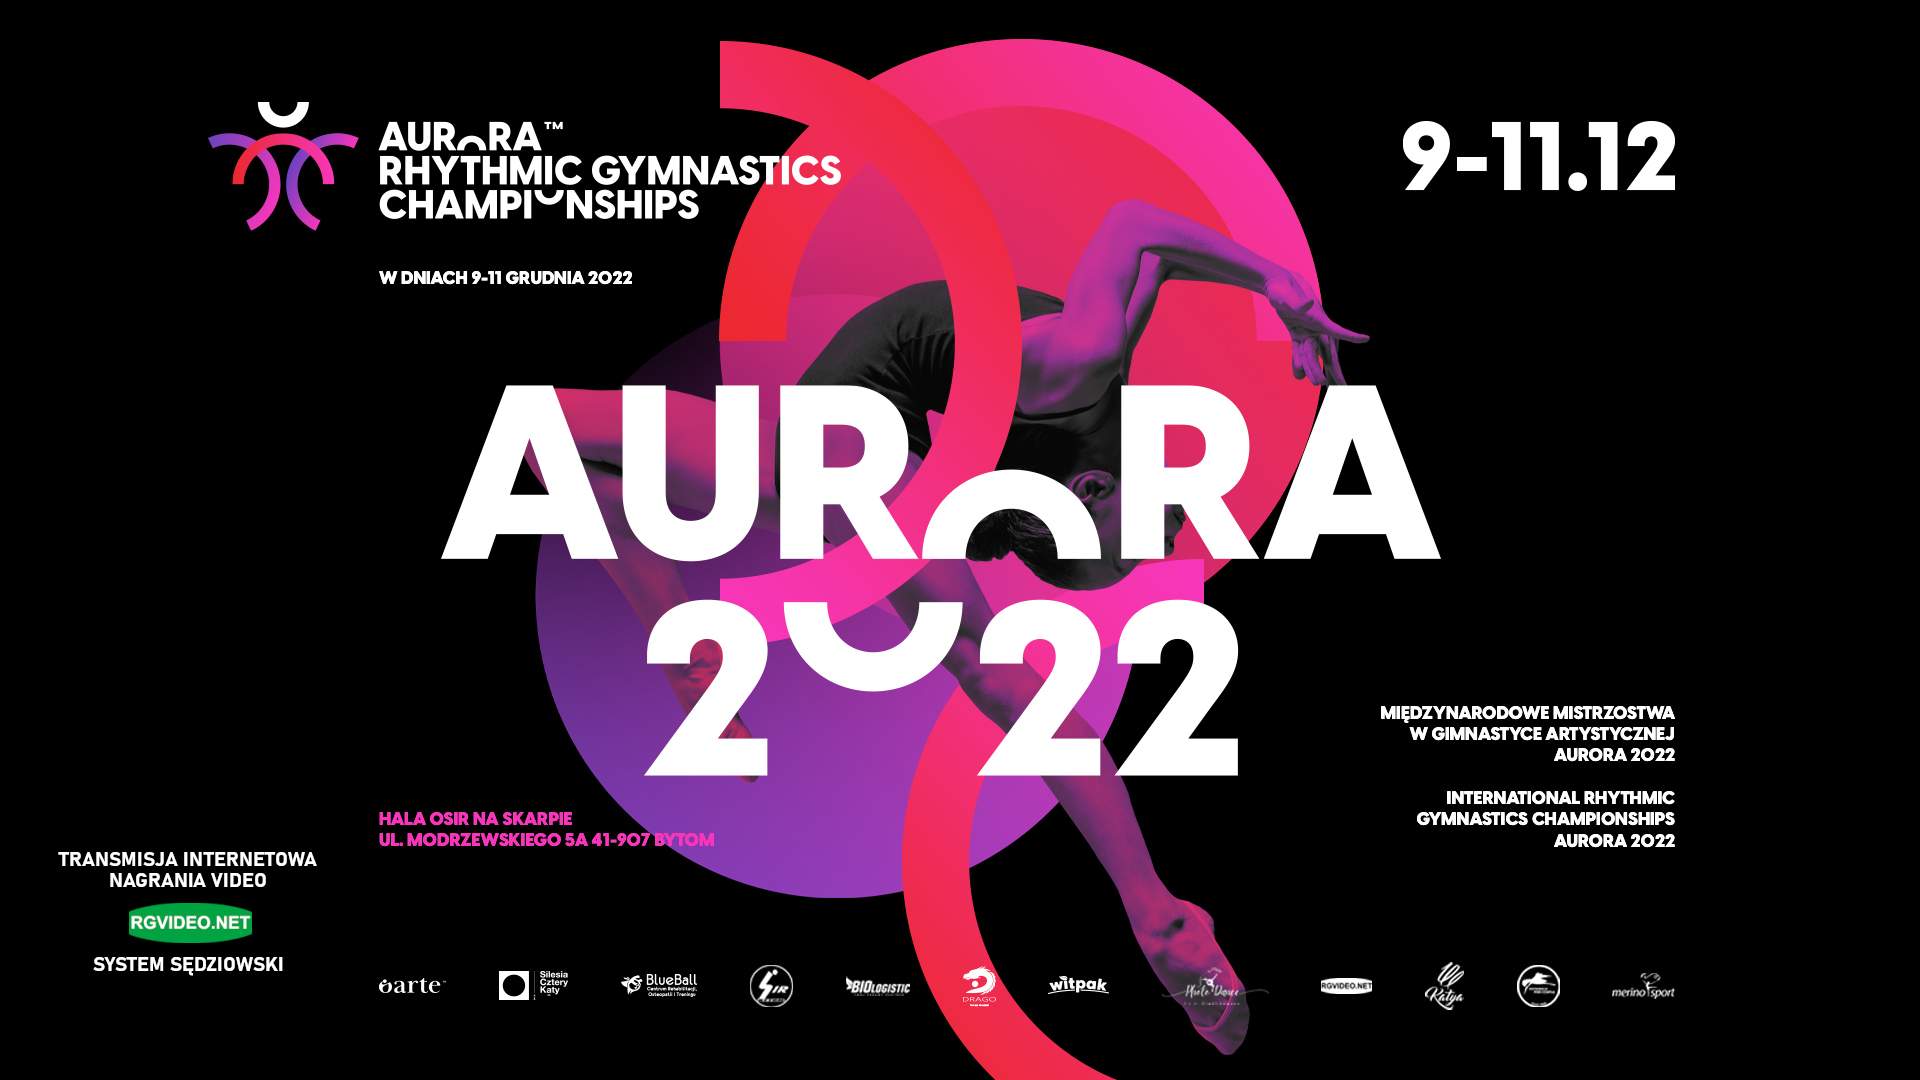 VIDEO - AURORA 2022